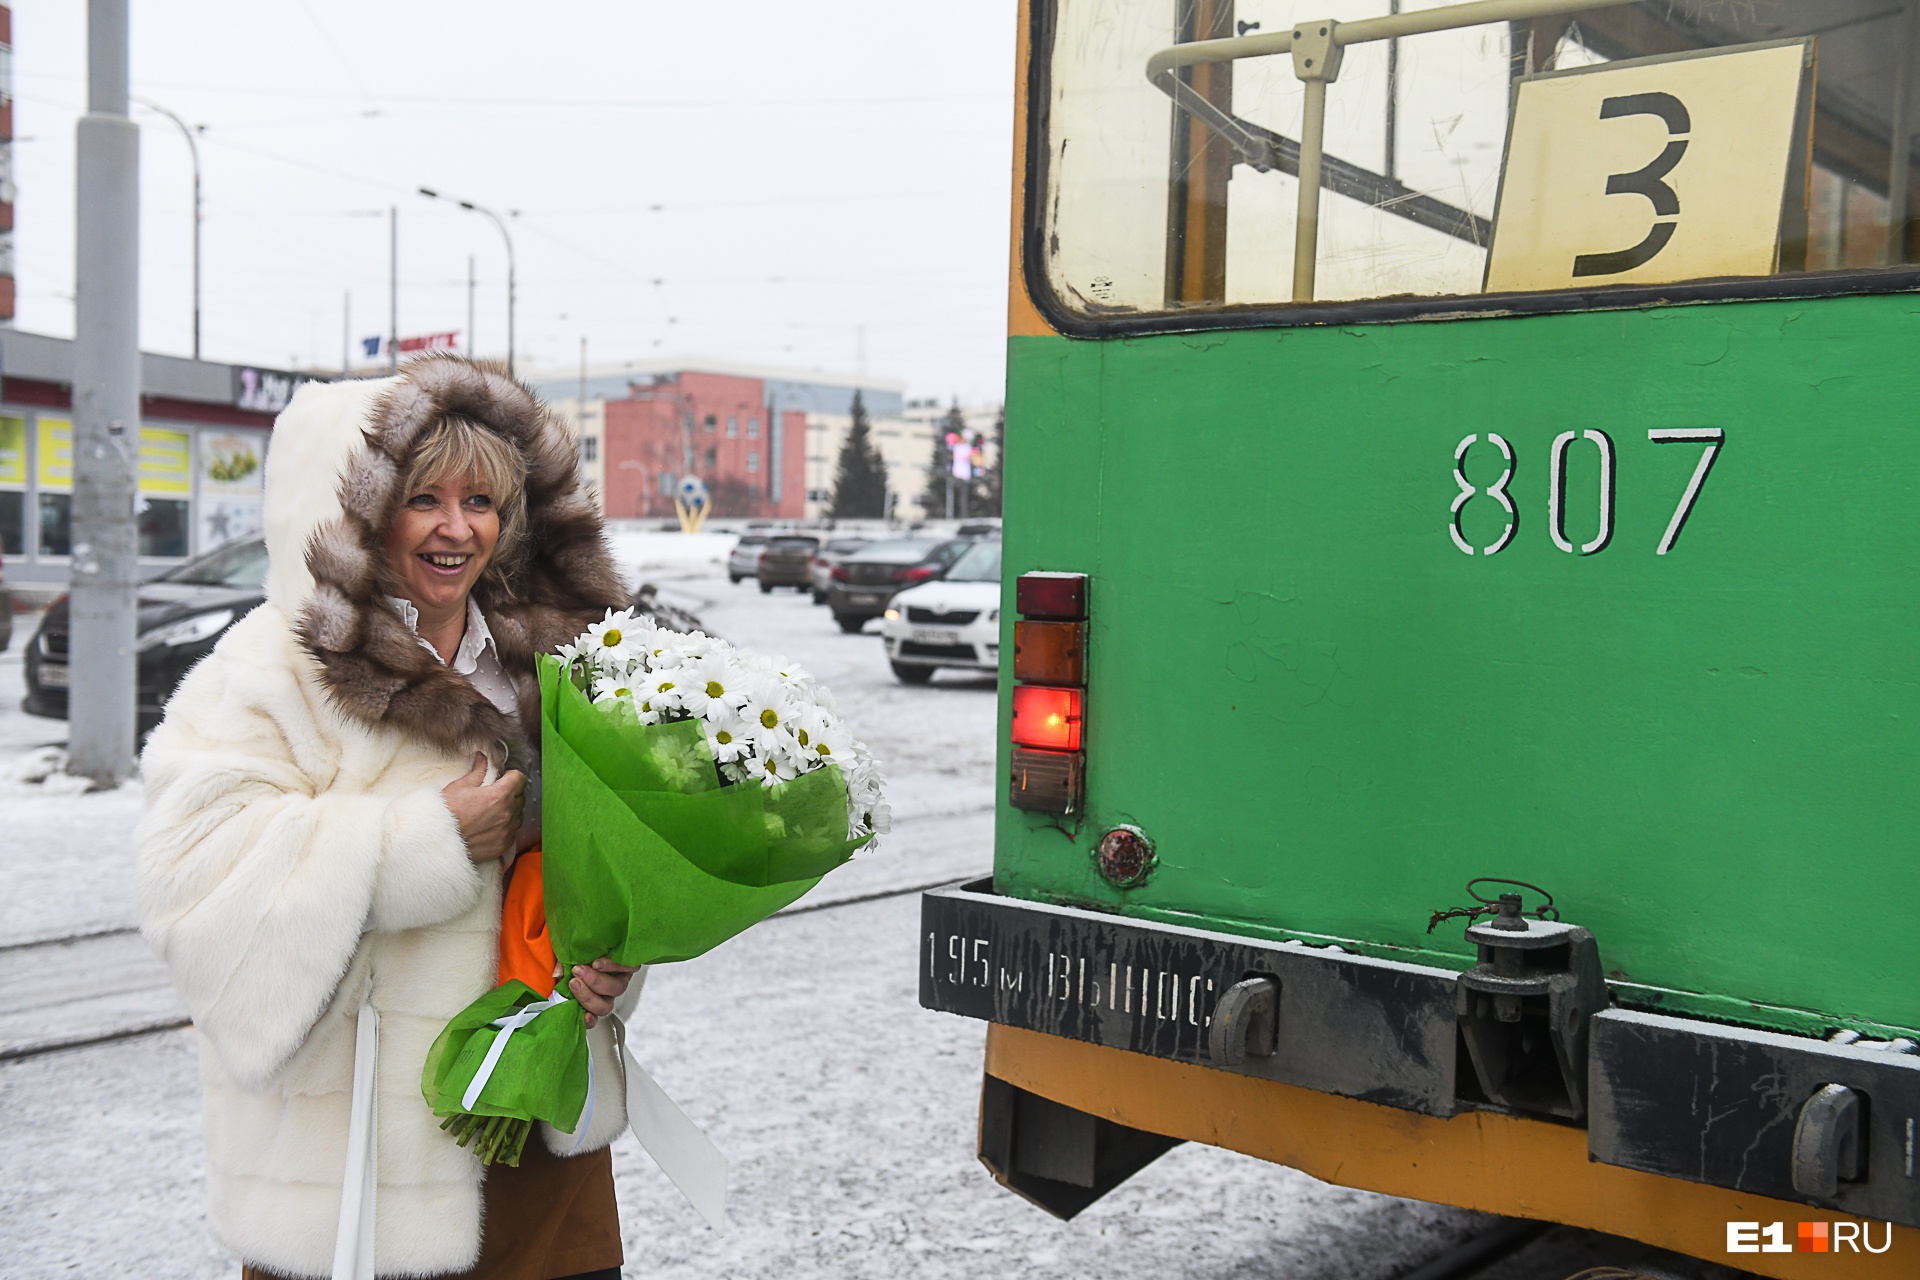 «Миллионерша на трамвае» объяснилась, почему «забыла» о полученном выигрыше в полмиллиарда рублей